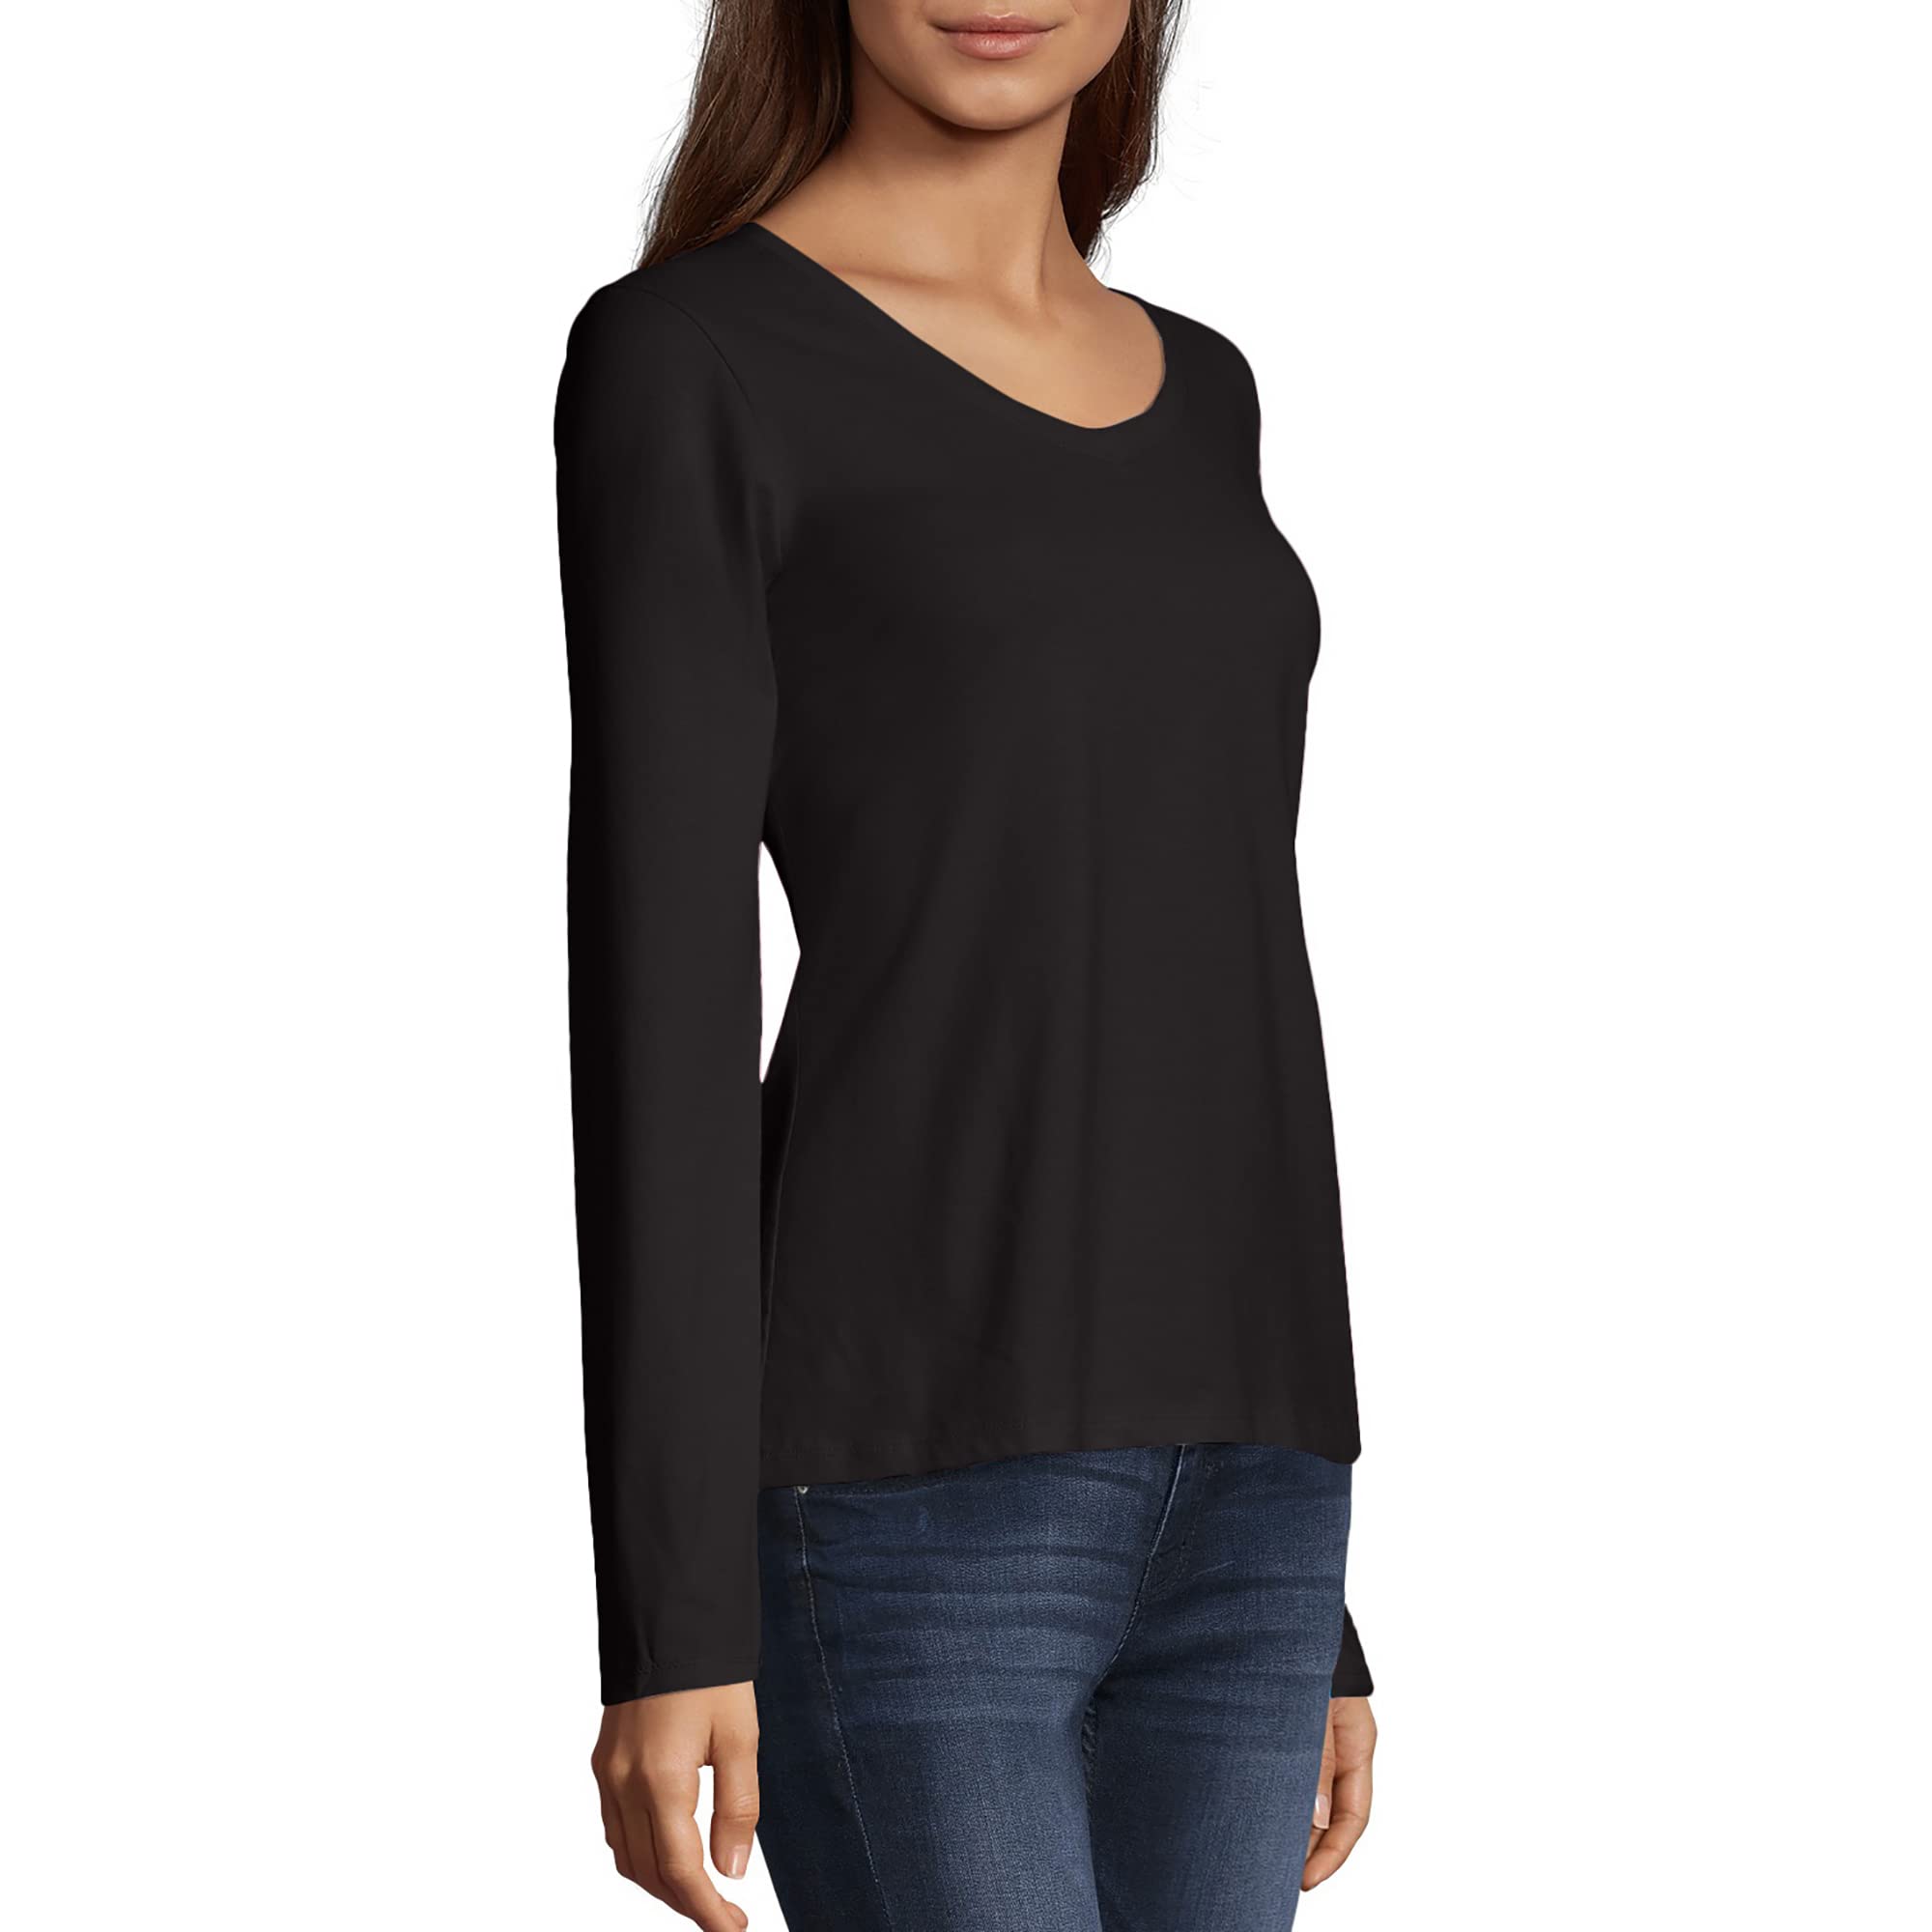 Hanes Originals Women’s Long Sleeve Cotton V-Neck T-Shirt, Lightweight V-Neck Tee, Modern Fit